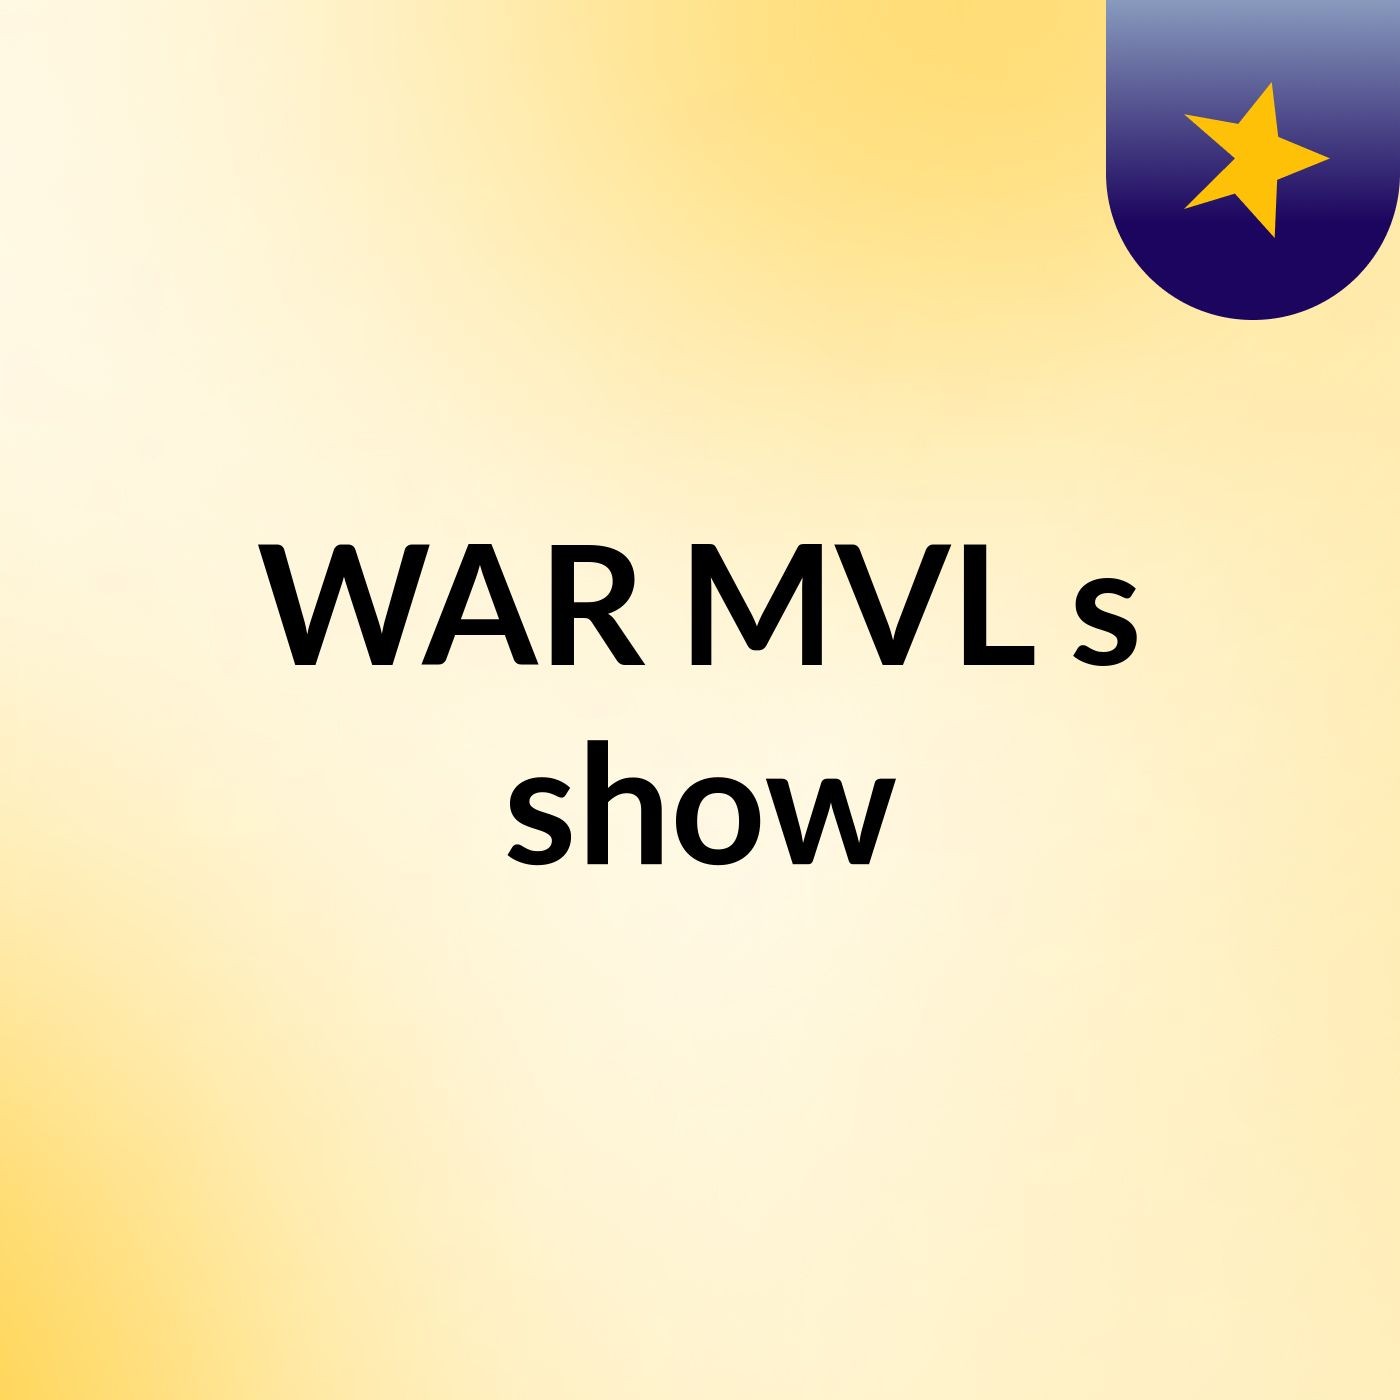 WAR MVL's show